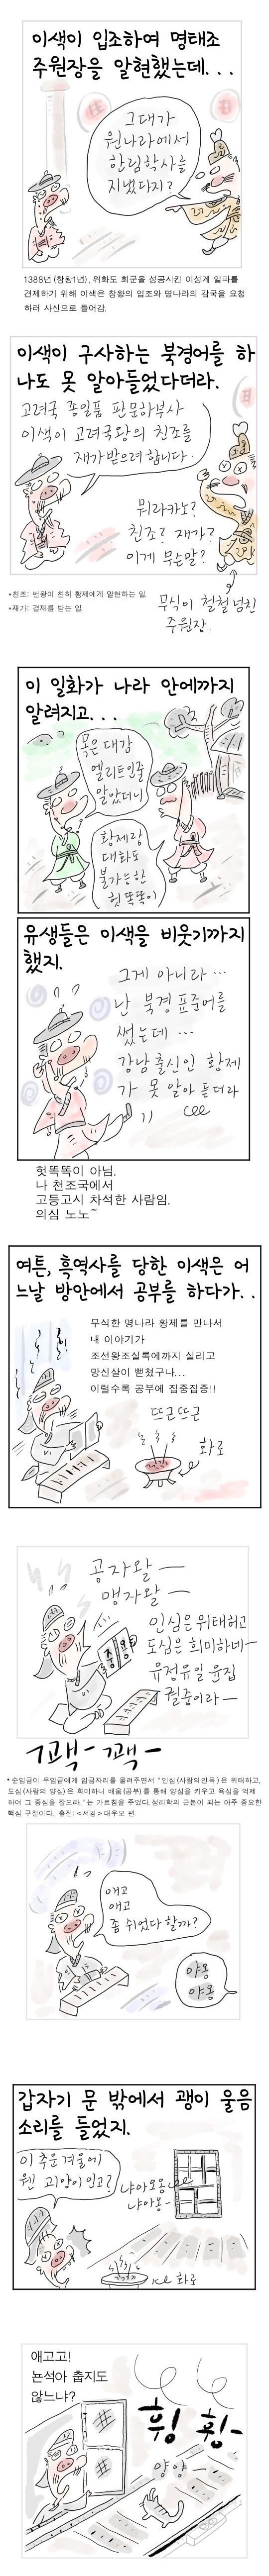 [역사툰] 史(사)람 이야기 17화: 정도전-정몽주 스승님도 고양이 집사?

